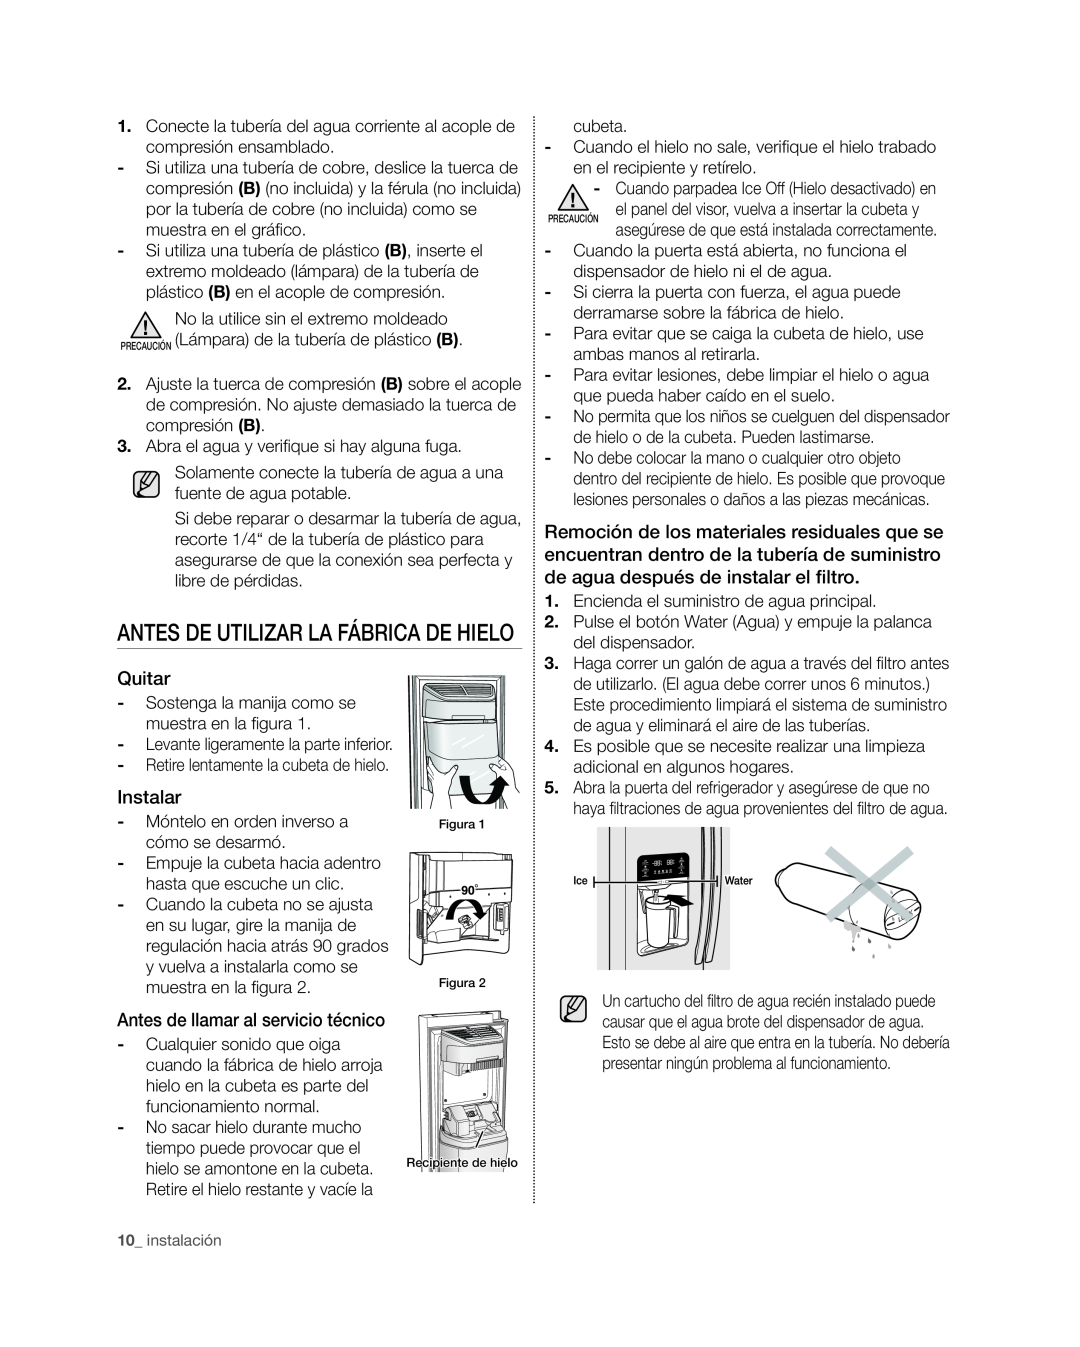 Samsung RSG309** user manual antes de utilizar la fábrica de hielo, Quitar, Instalar, Antes de llamar al servicio técnico 